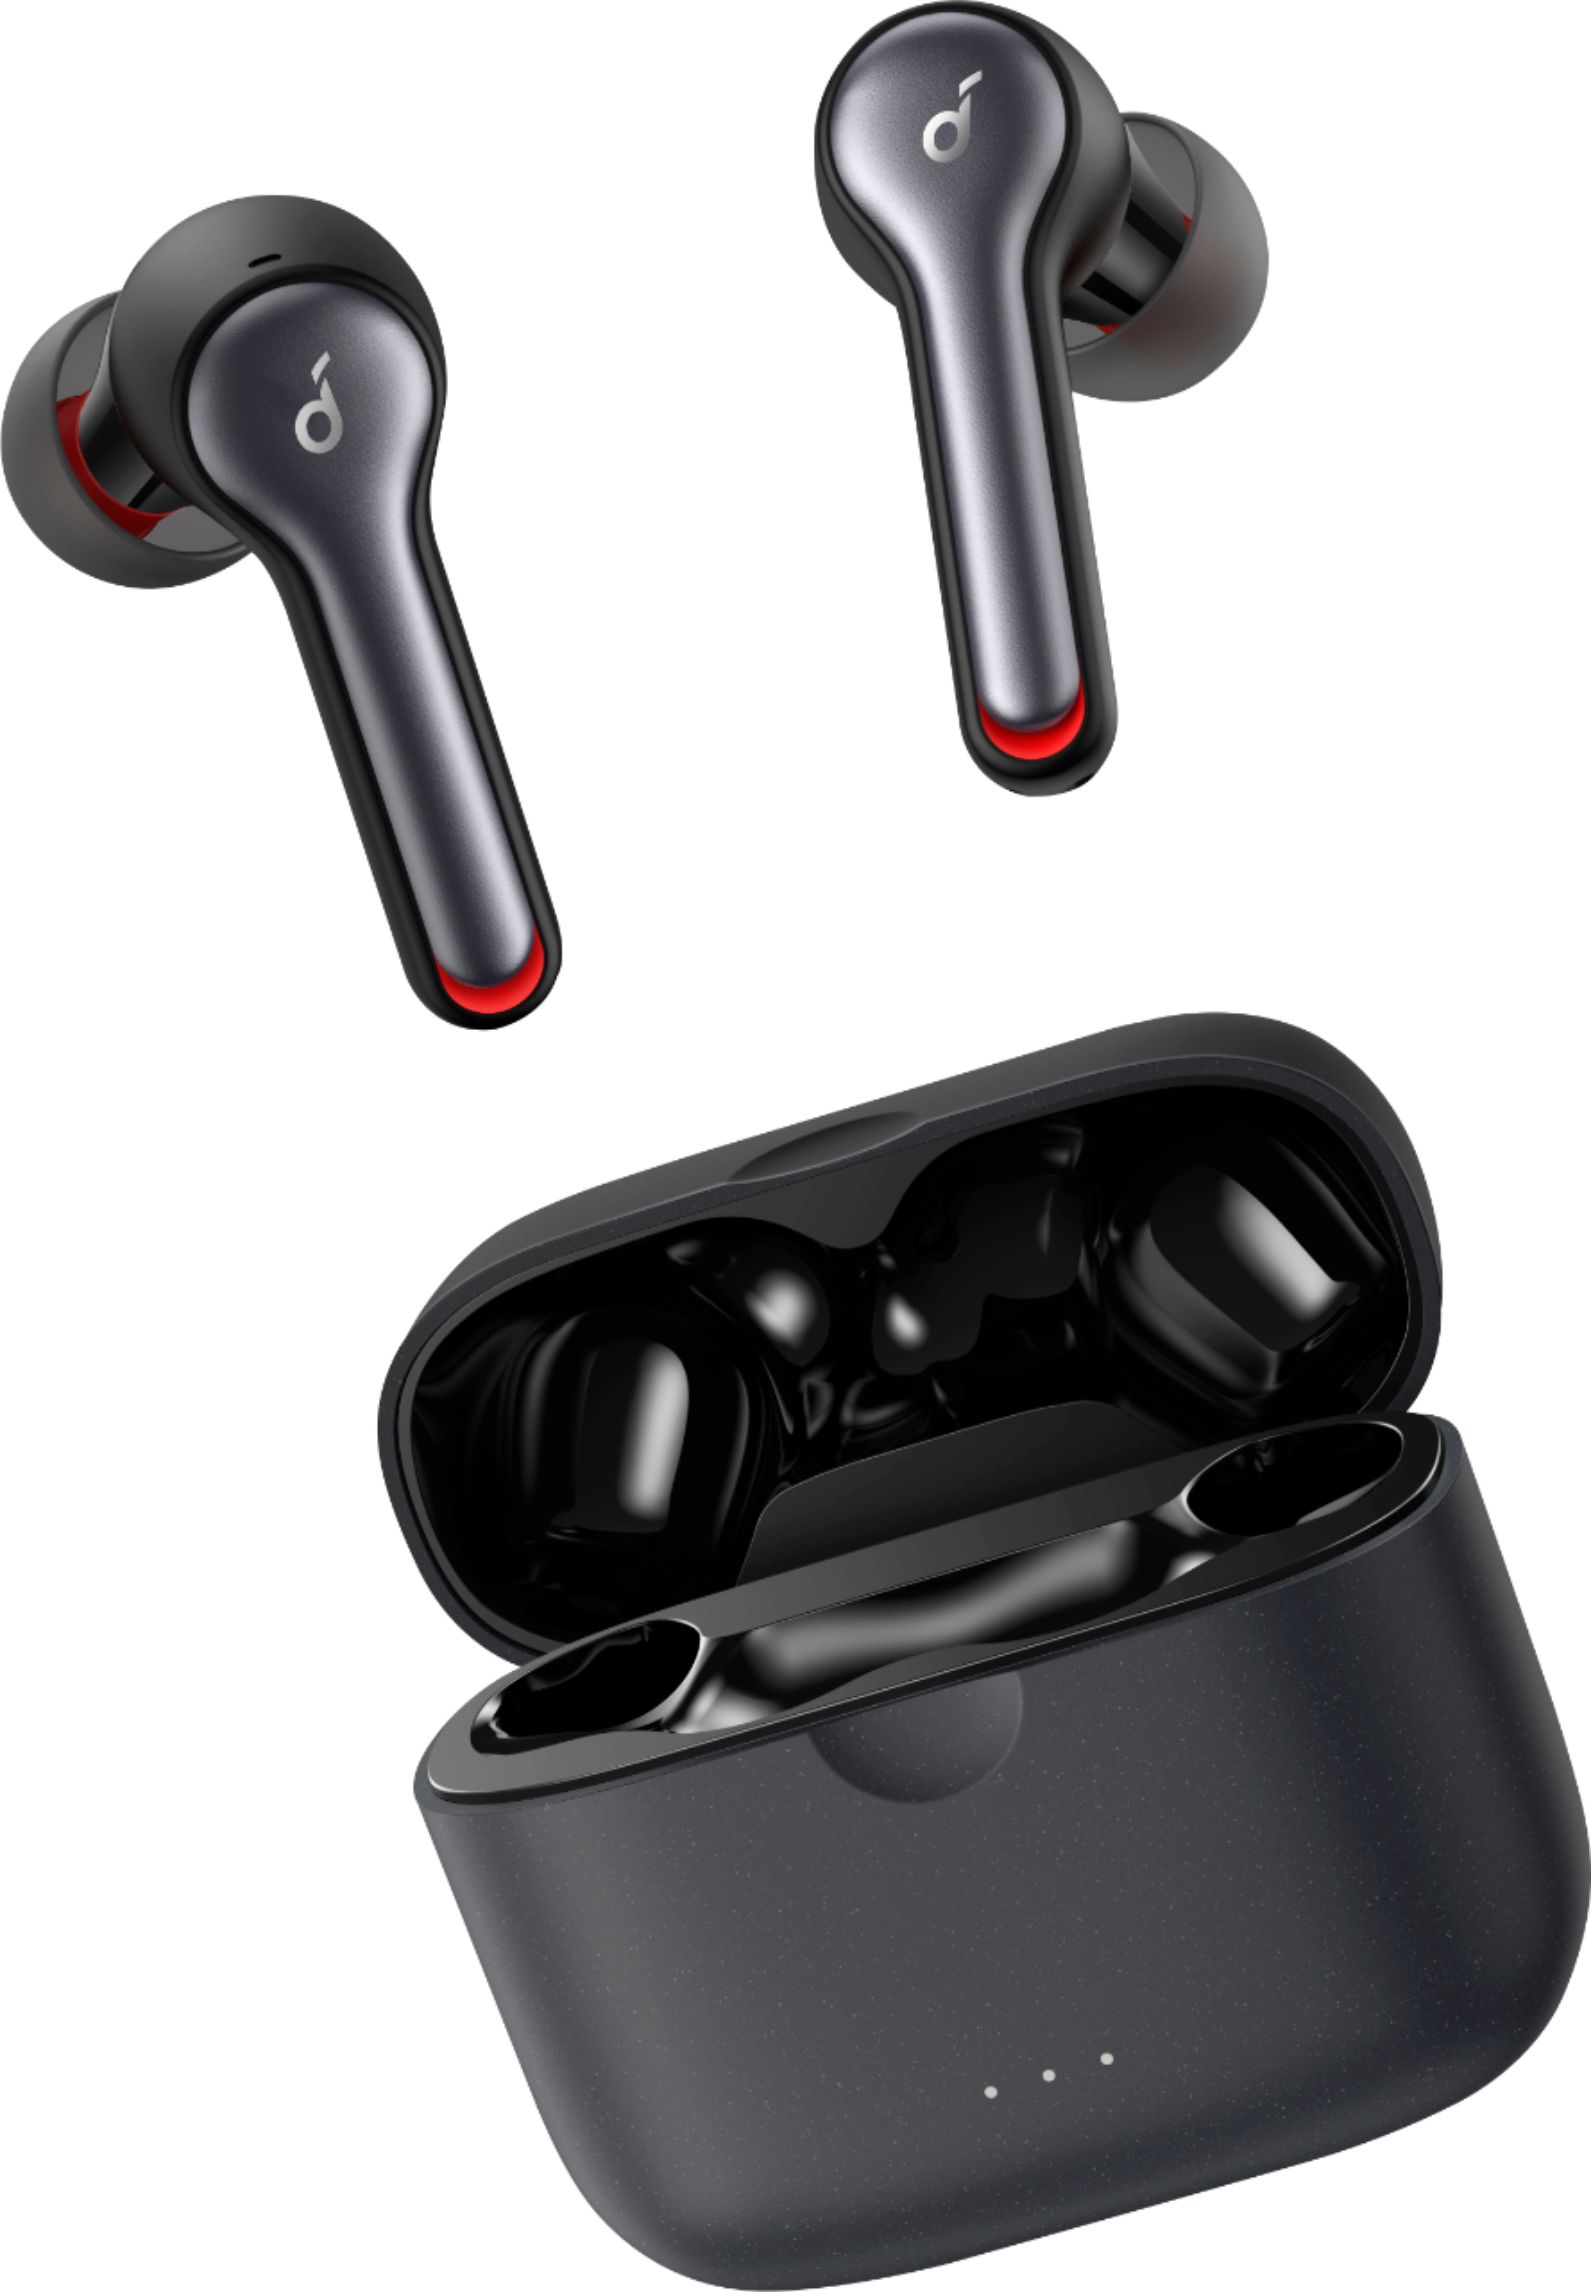 Anker - SoundCore Liberty Air 2 True Wireless In-Ear Headset - Black